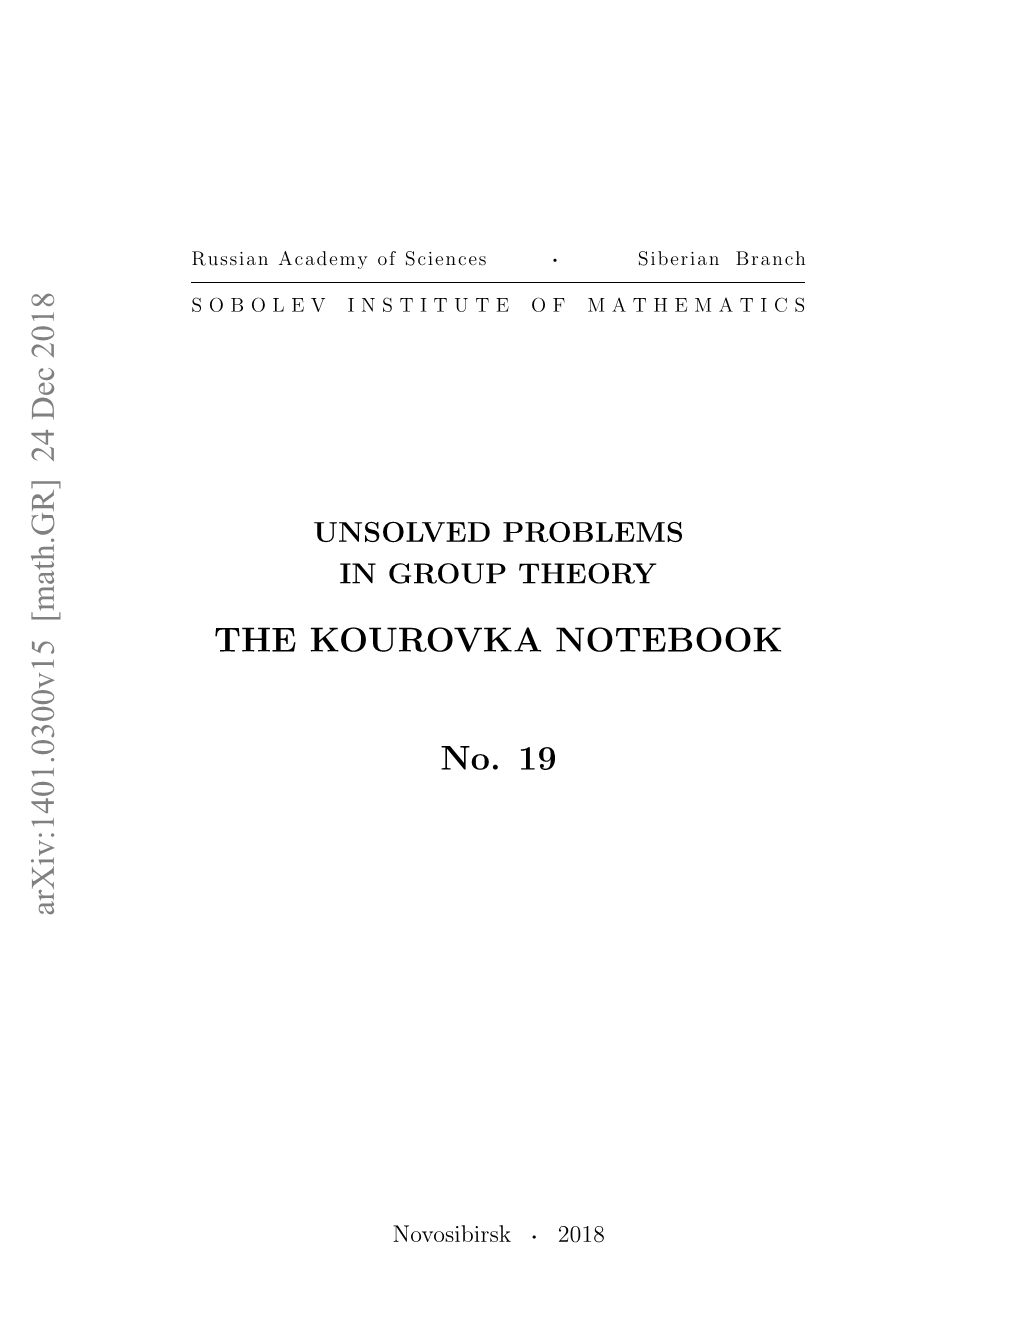 Arxiv:1401.0300V15 [Math.GR] 24 Dec 2018 the KOUROVKA NOTEBOOK No. 19